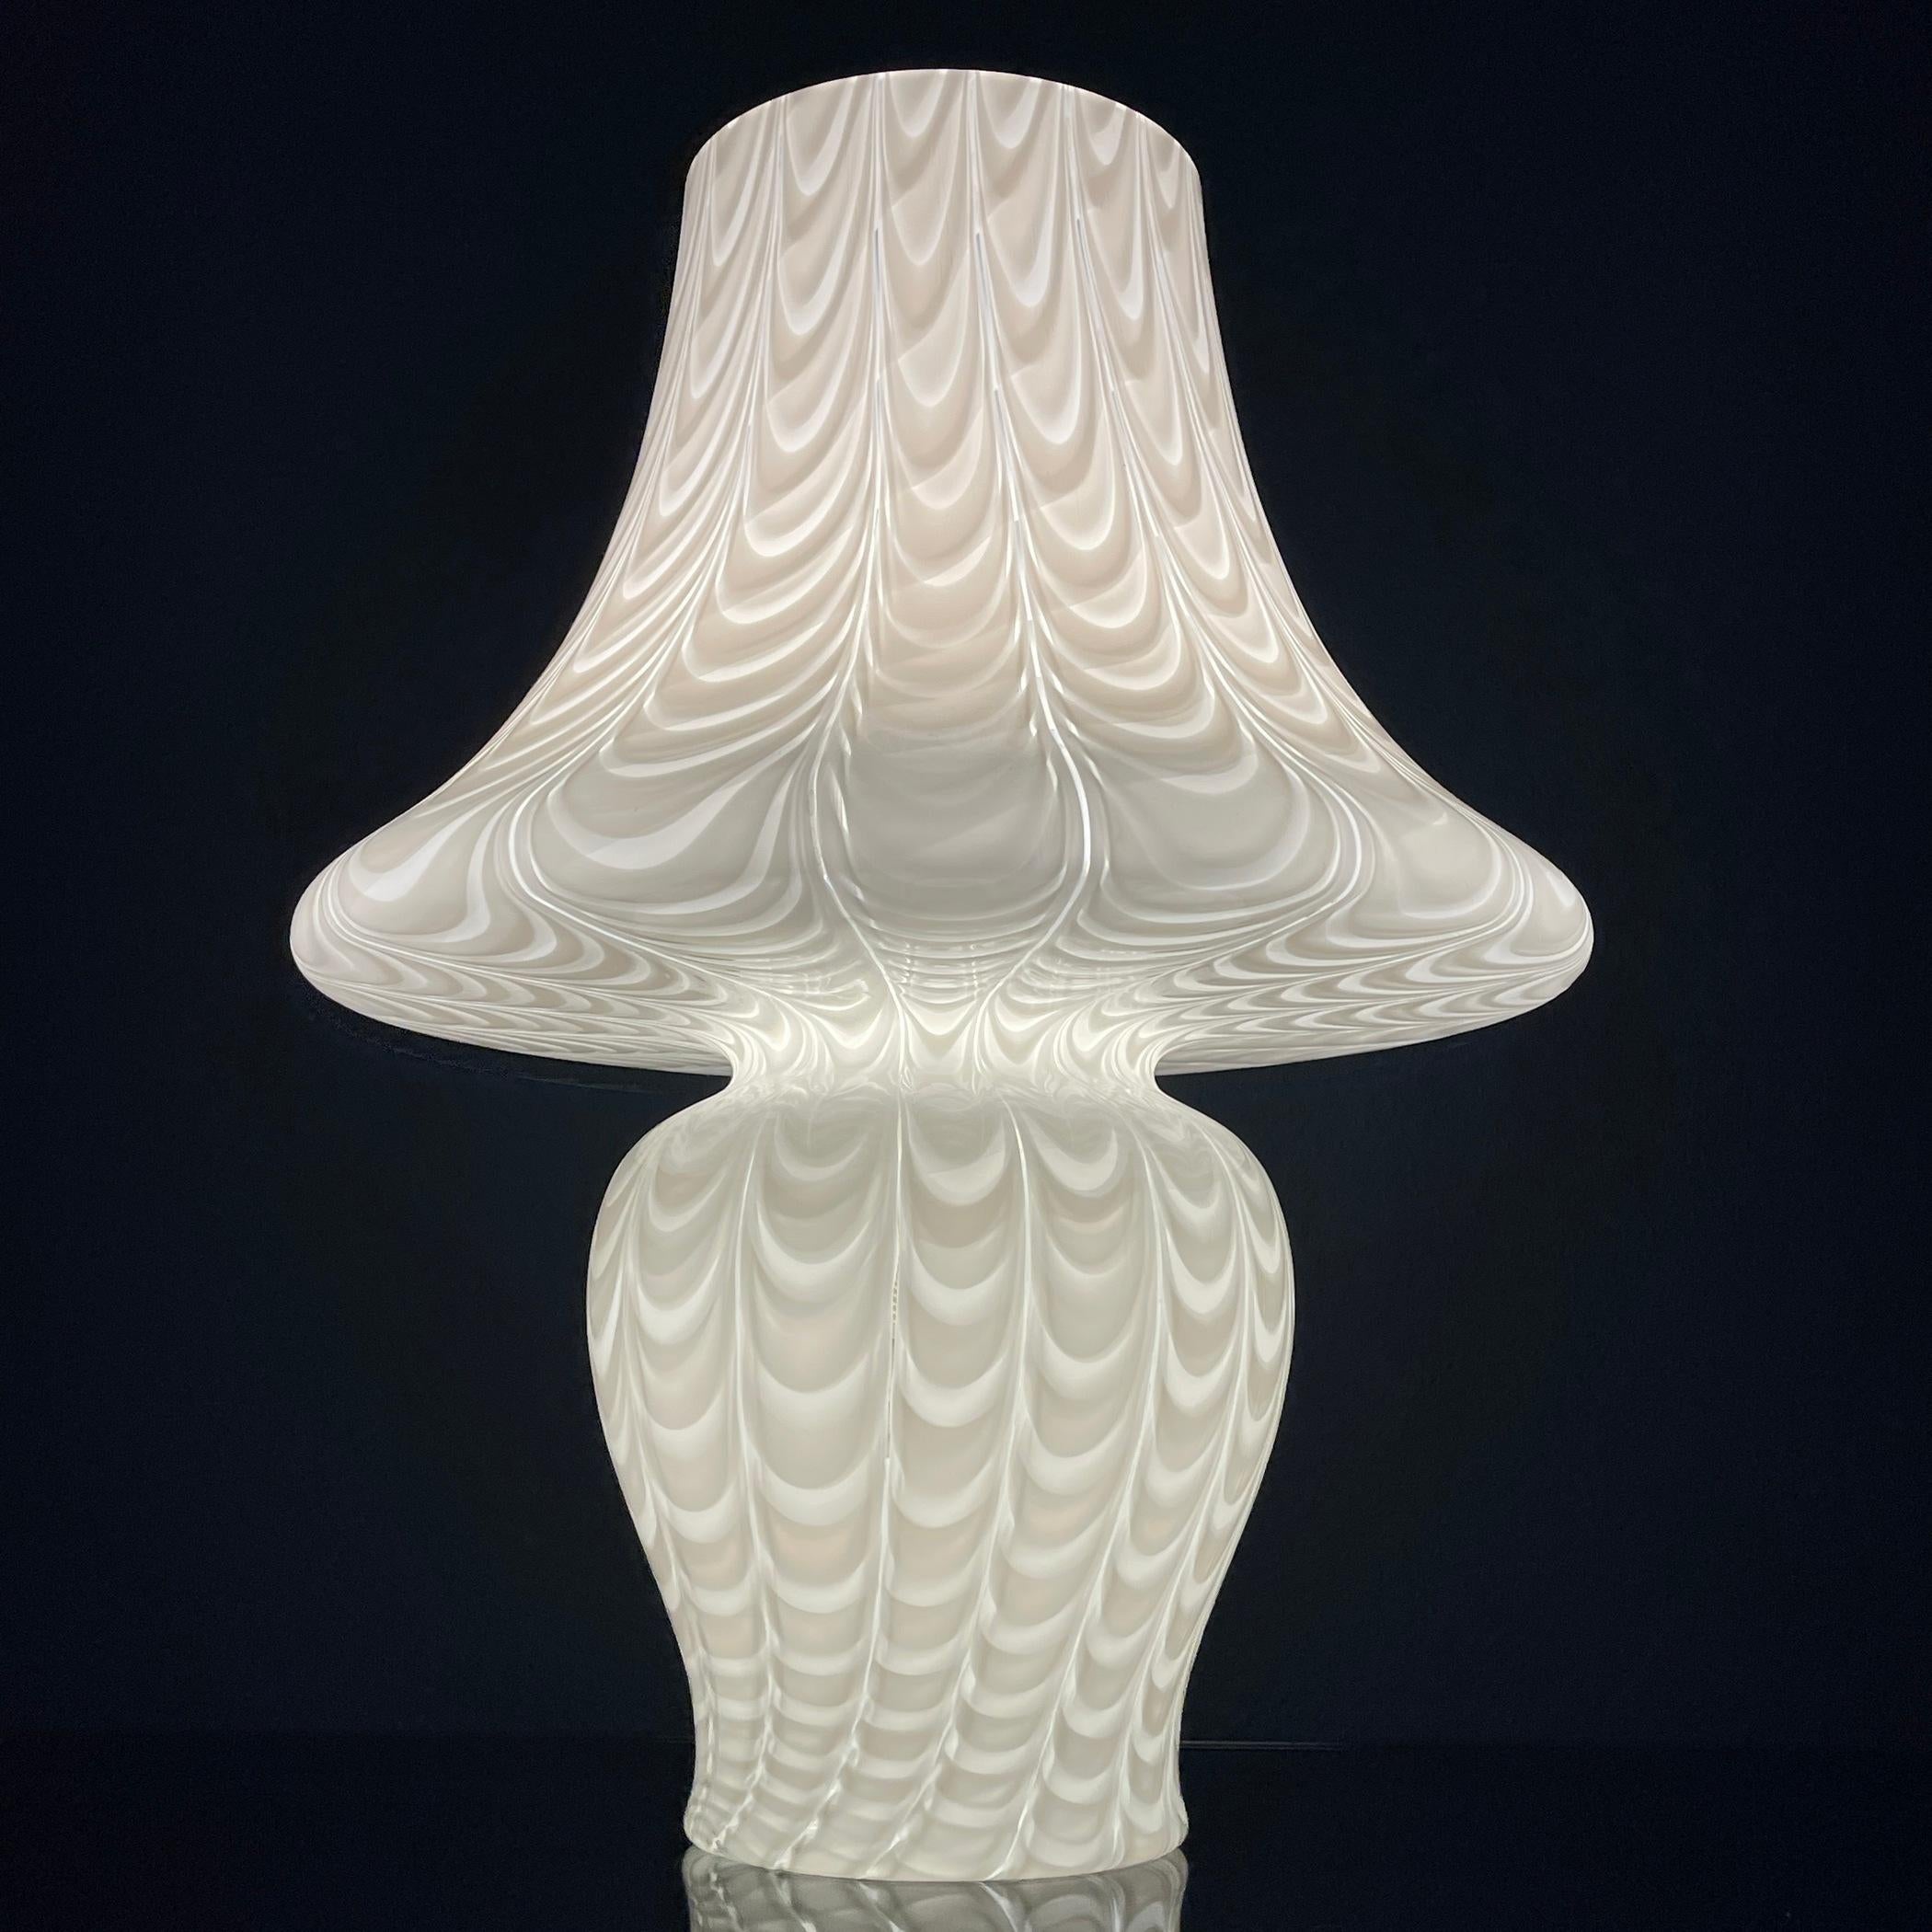 Bringen Sie zeitlose Eleganz in Ihren Raum mit der klassischen großen weißen Murano-Pilzlampe mit atemberaubendem mundgeblasenem Pfauenmuster, die in den 1970er Jahren in Italien sorgfältig hergestellt wurde. Dieses exquisite Stück strahlt